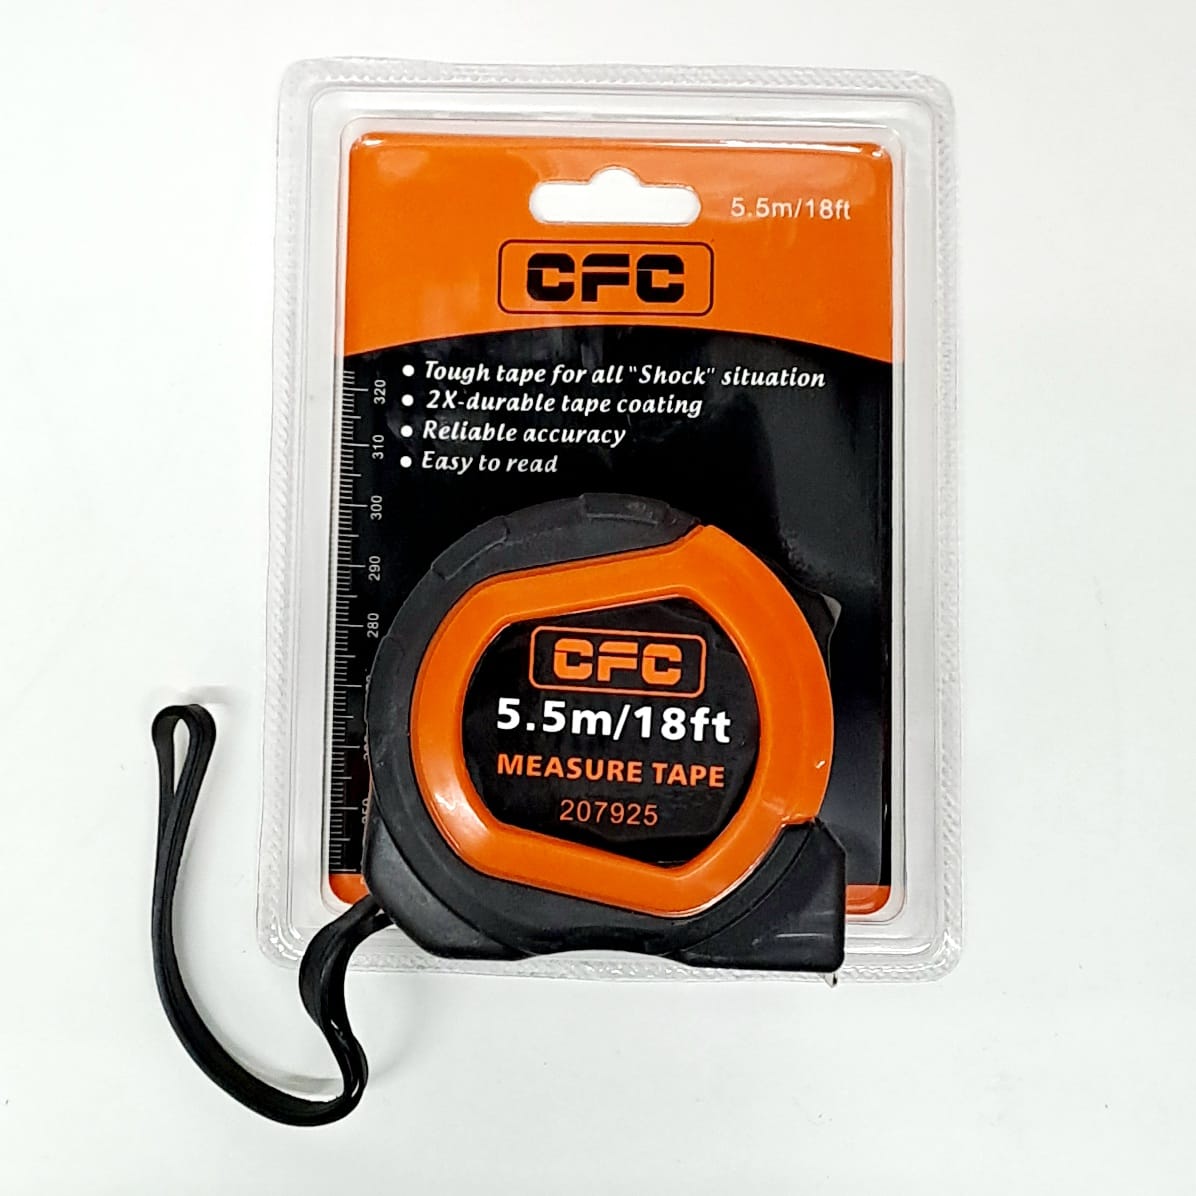 CFC Masuring Tape 5.5m/18ft, 25mm Blade 